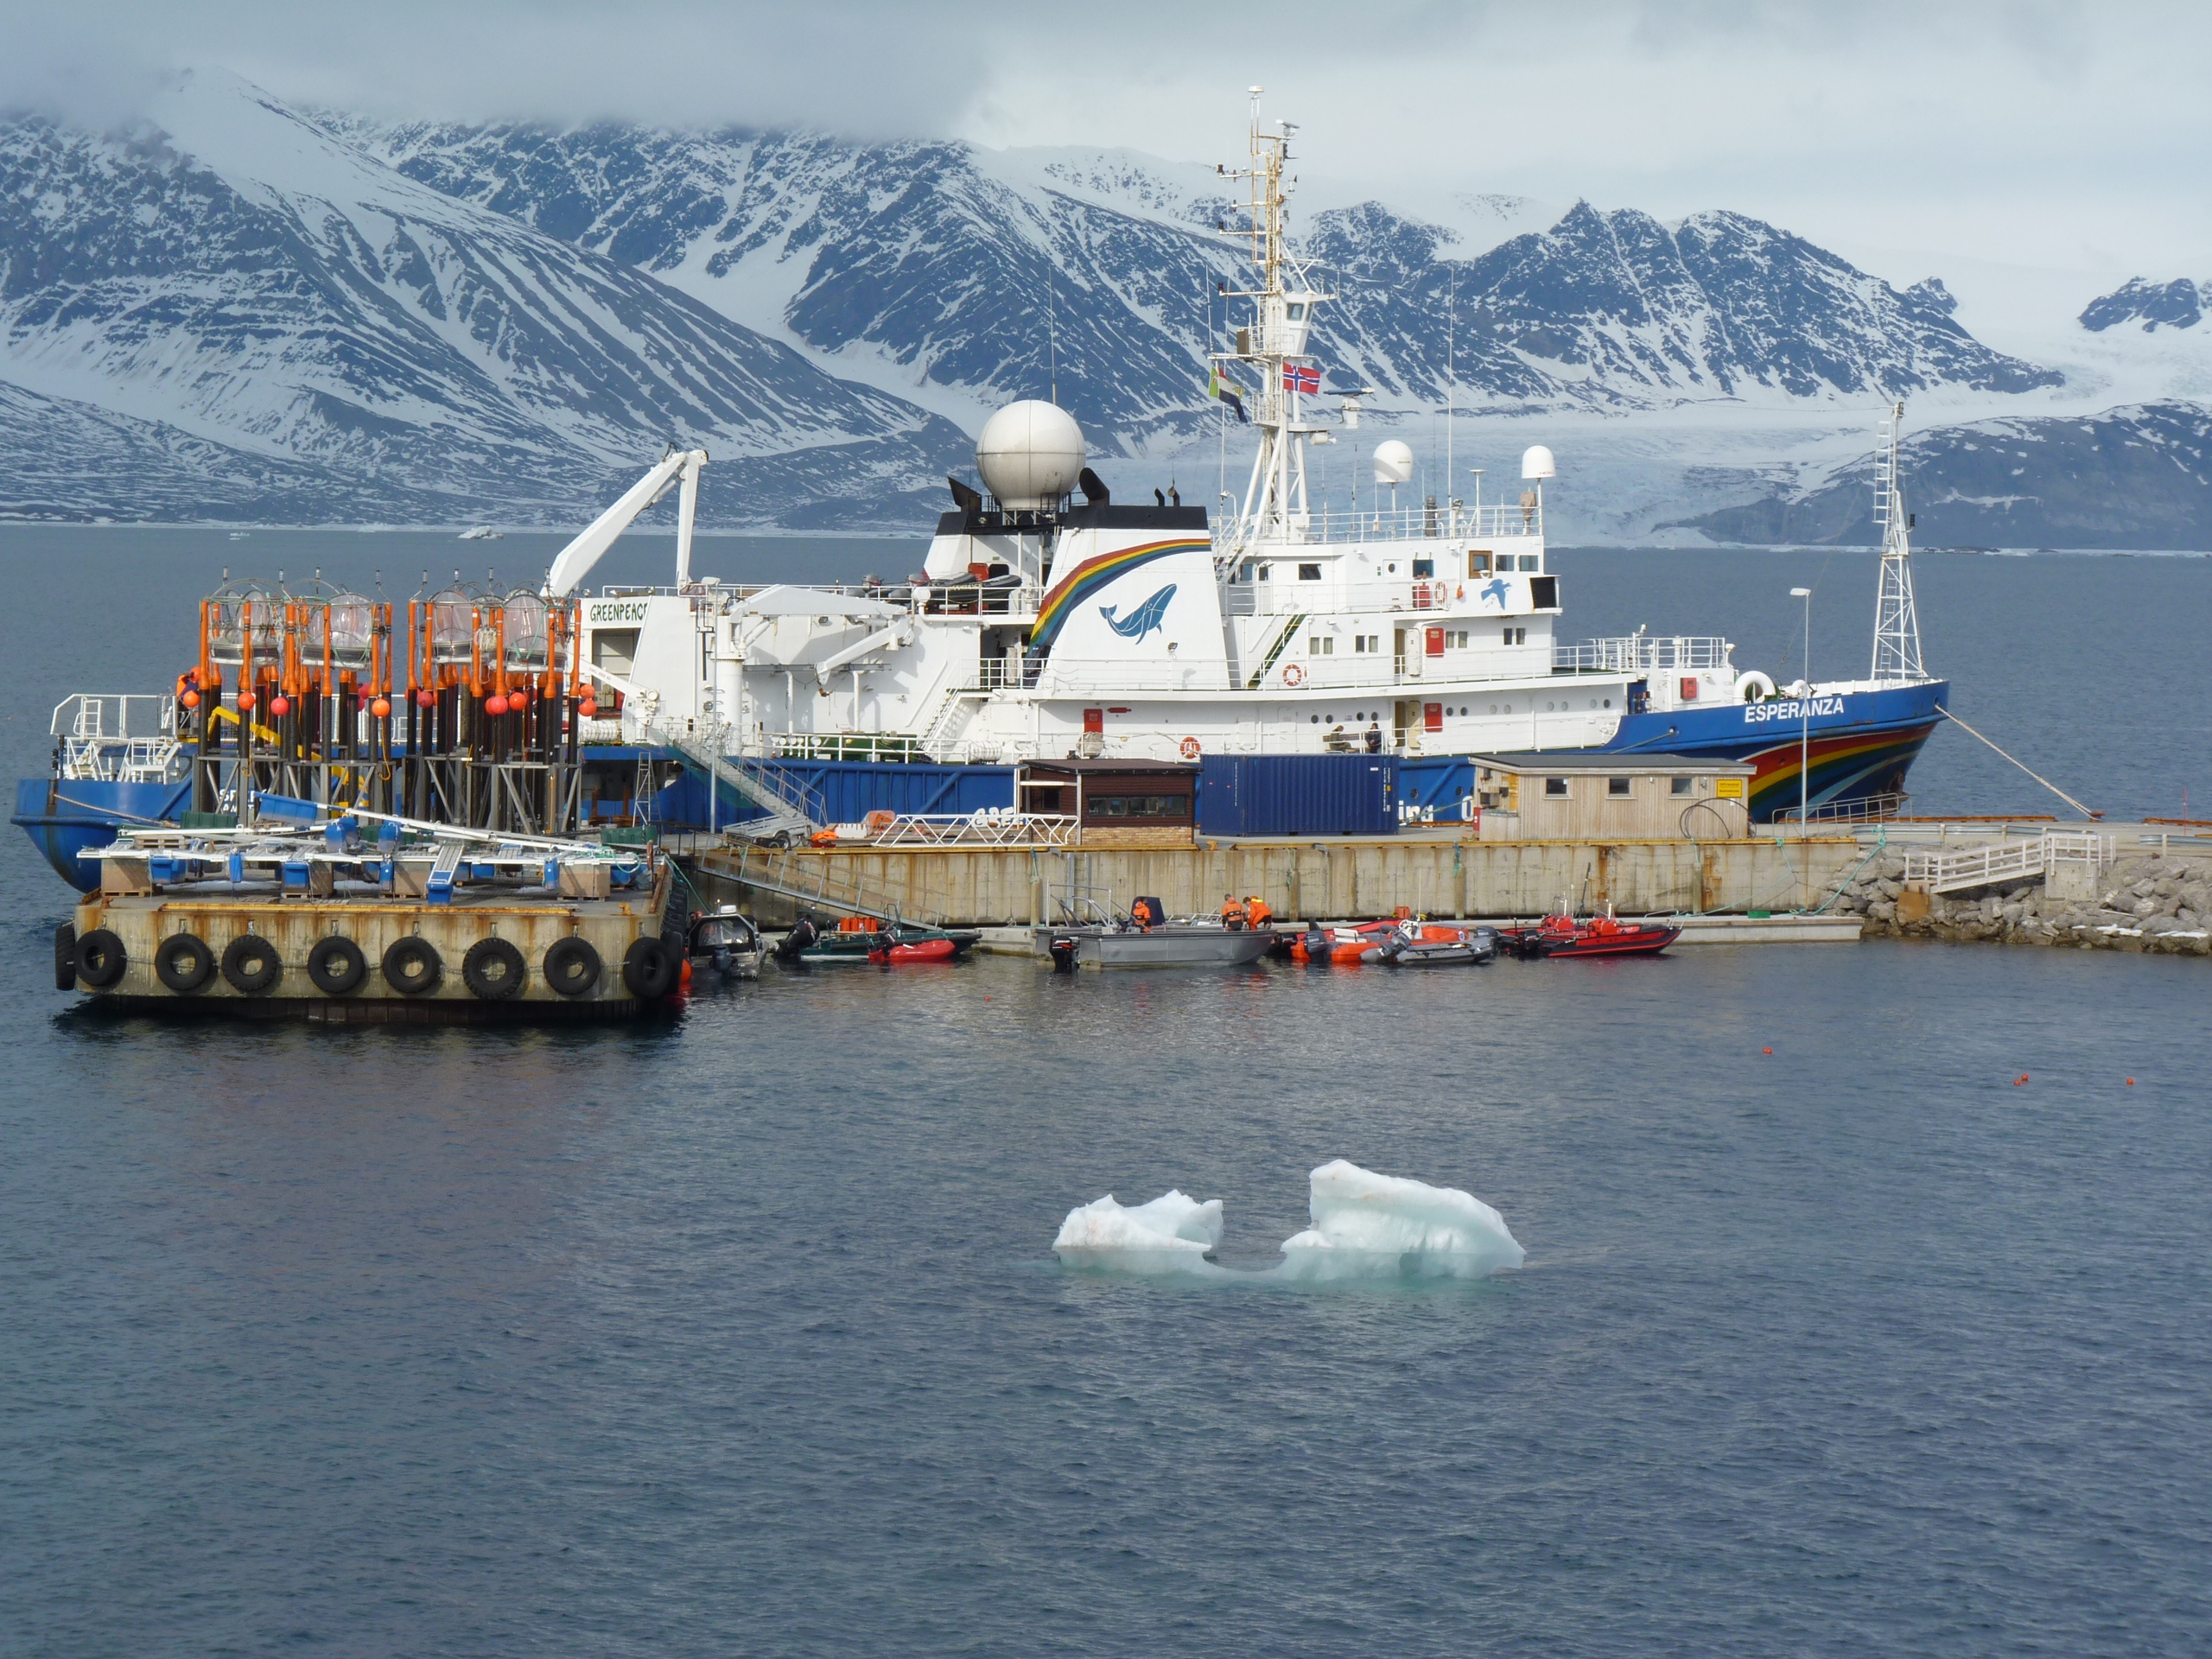 Equipment to measure ocean acidification await loading to Greenpeace ship Esperanza at Ny Alesund, 2010